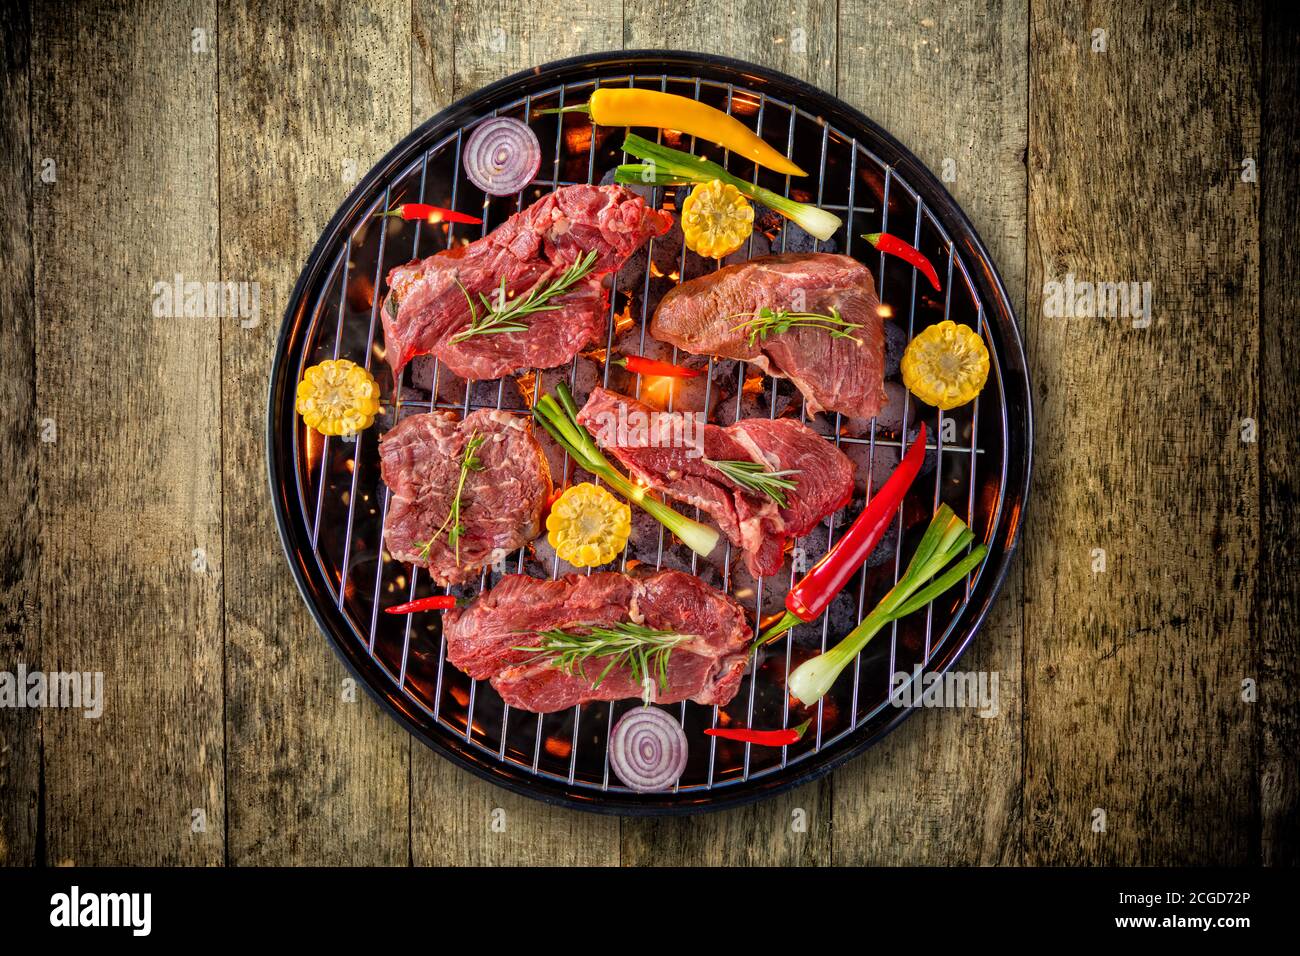 Blick von oben auf die frisches Fleisch und Gemüse vom Grill auf hölzernen  Boden. Grill, Grill und Essen Konzept Stockfotografie - Alamy